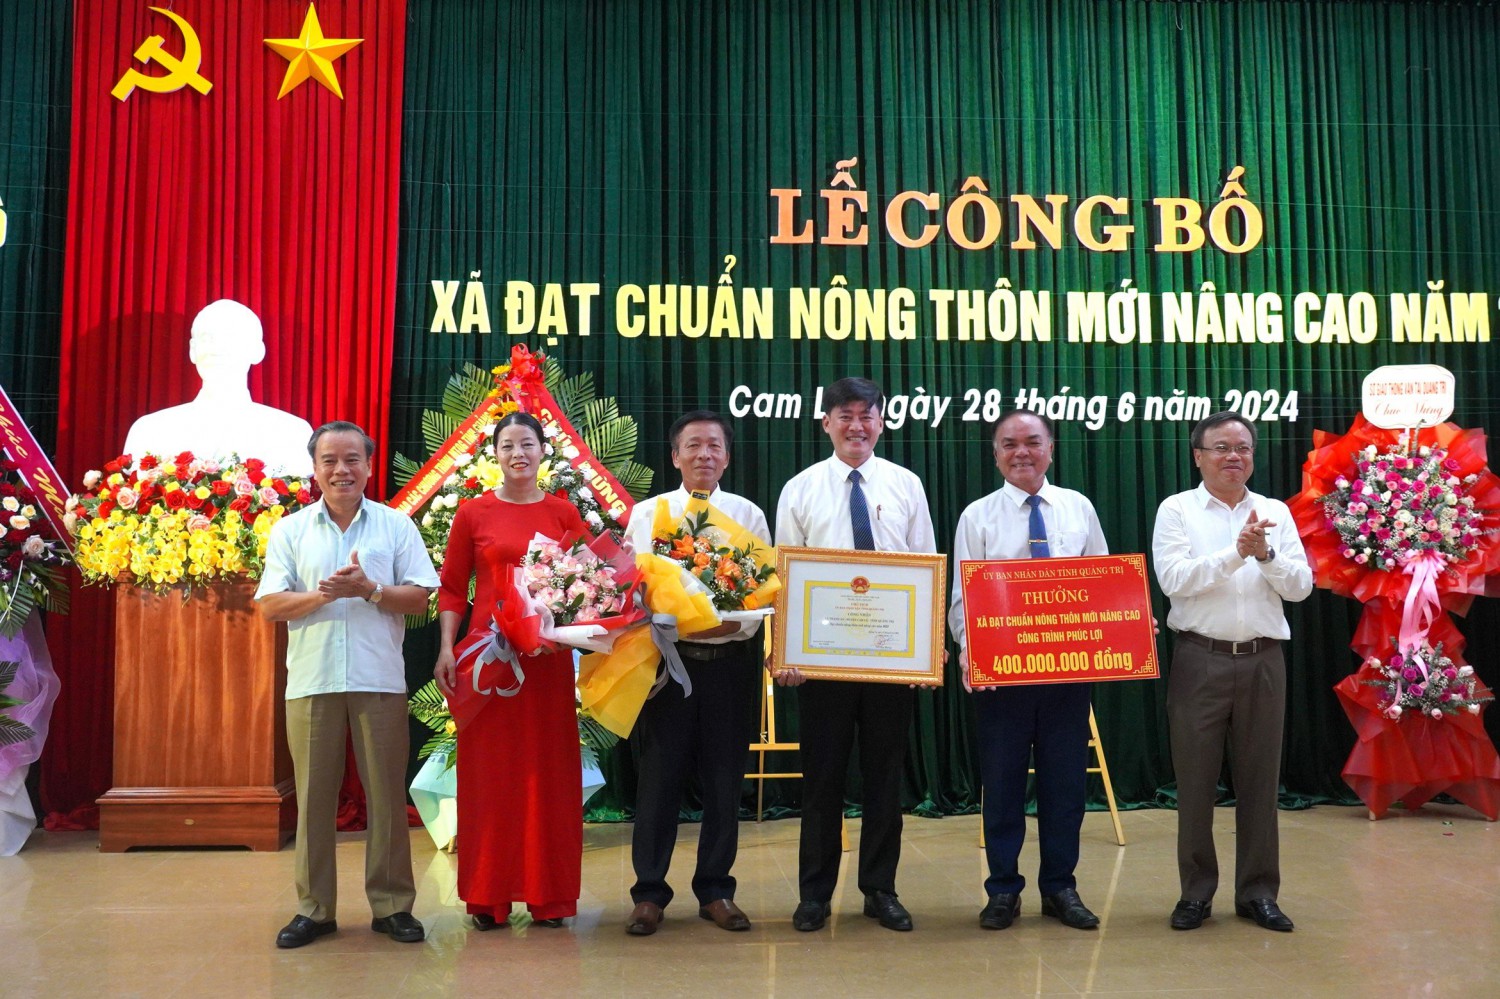 Phó Chủ tịch UBND tỉnh Lê Đức Tiến trao bằng công nhận xã đạt chuẩn NTM nâng cao và công trình phúc lợi trị giá 400 triệu đồng cho xã Thanh An